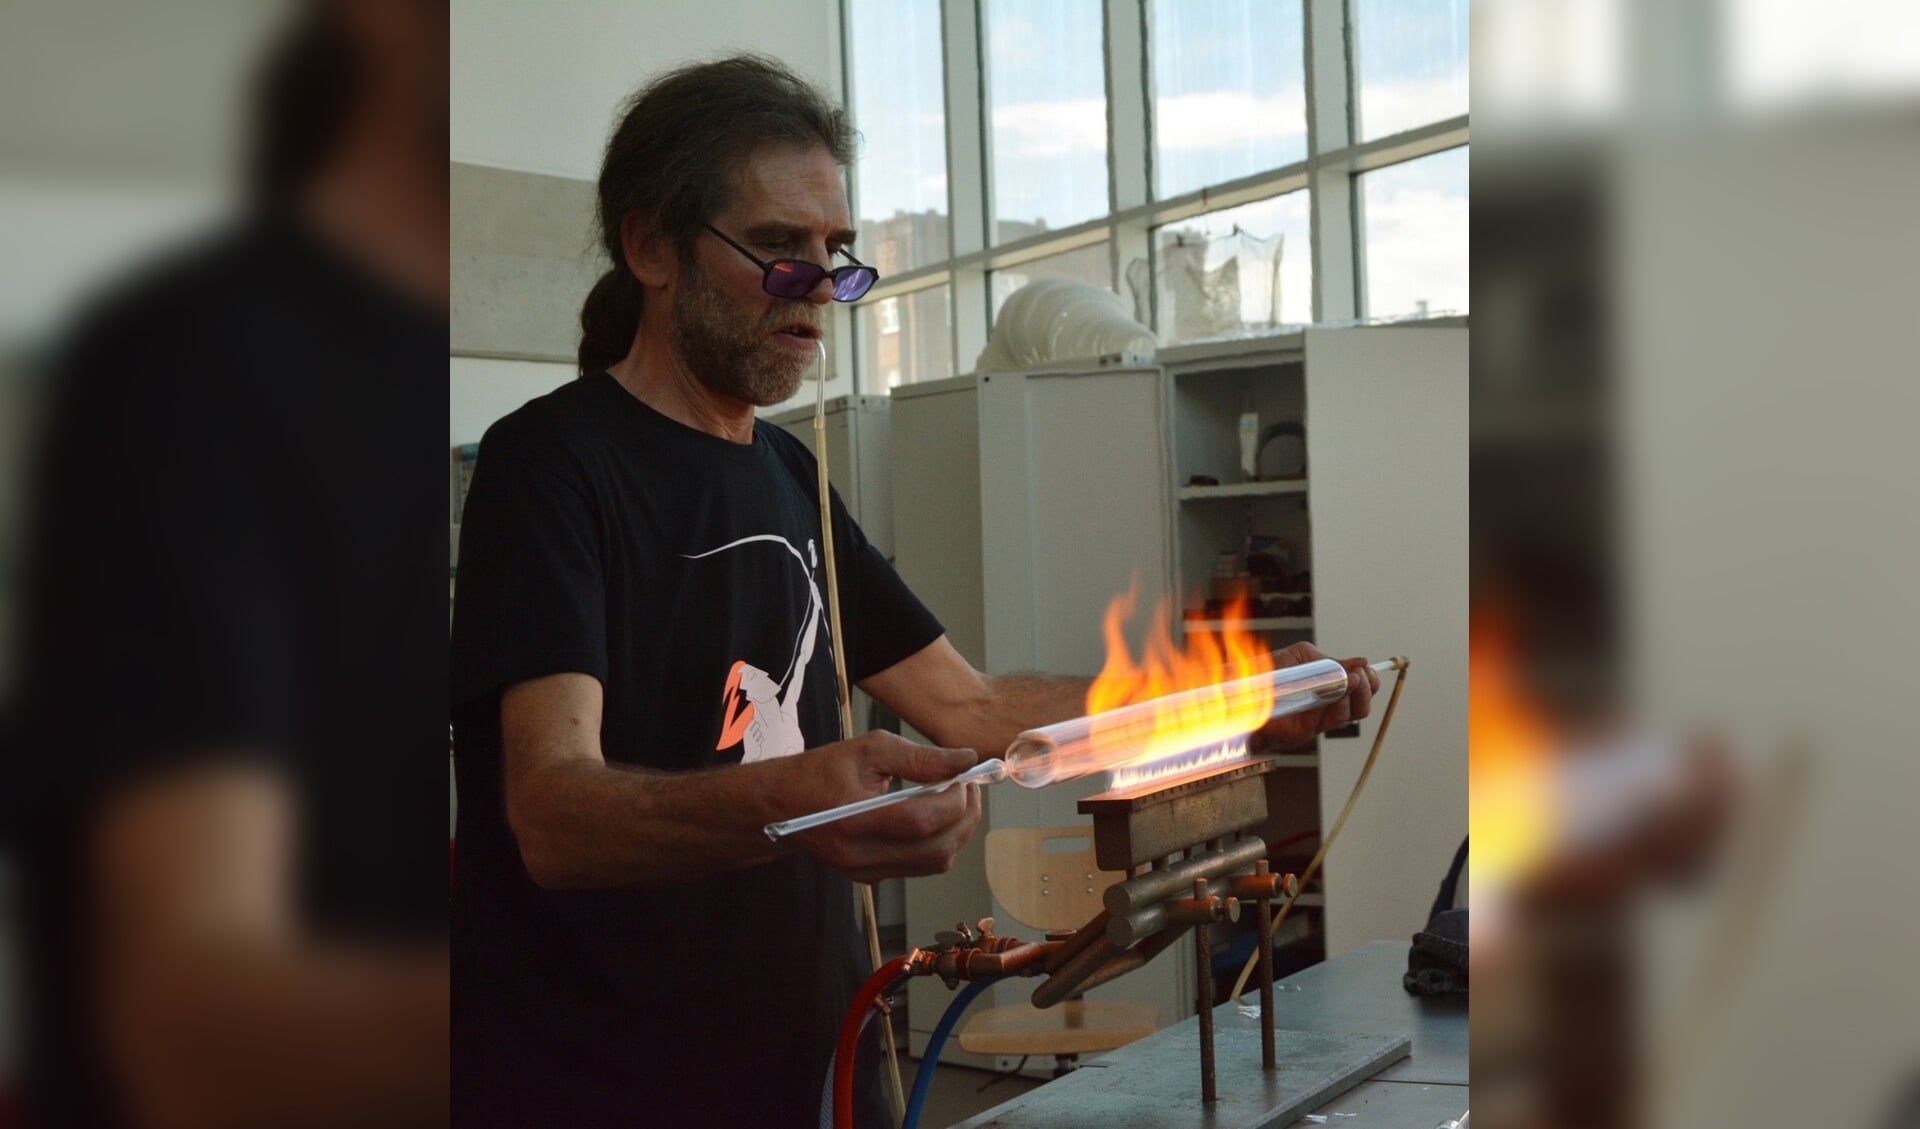 Duitse glasmeester Jörg Hanowski aan het werk aan de brander. N.B. let op de slang in zijn mond waarmee hij mini- glasblaast